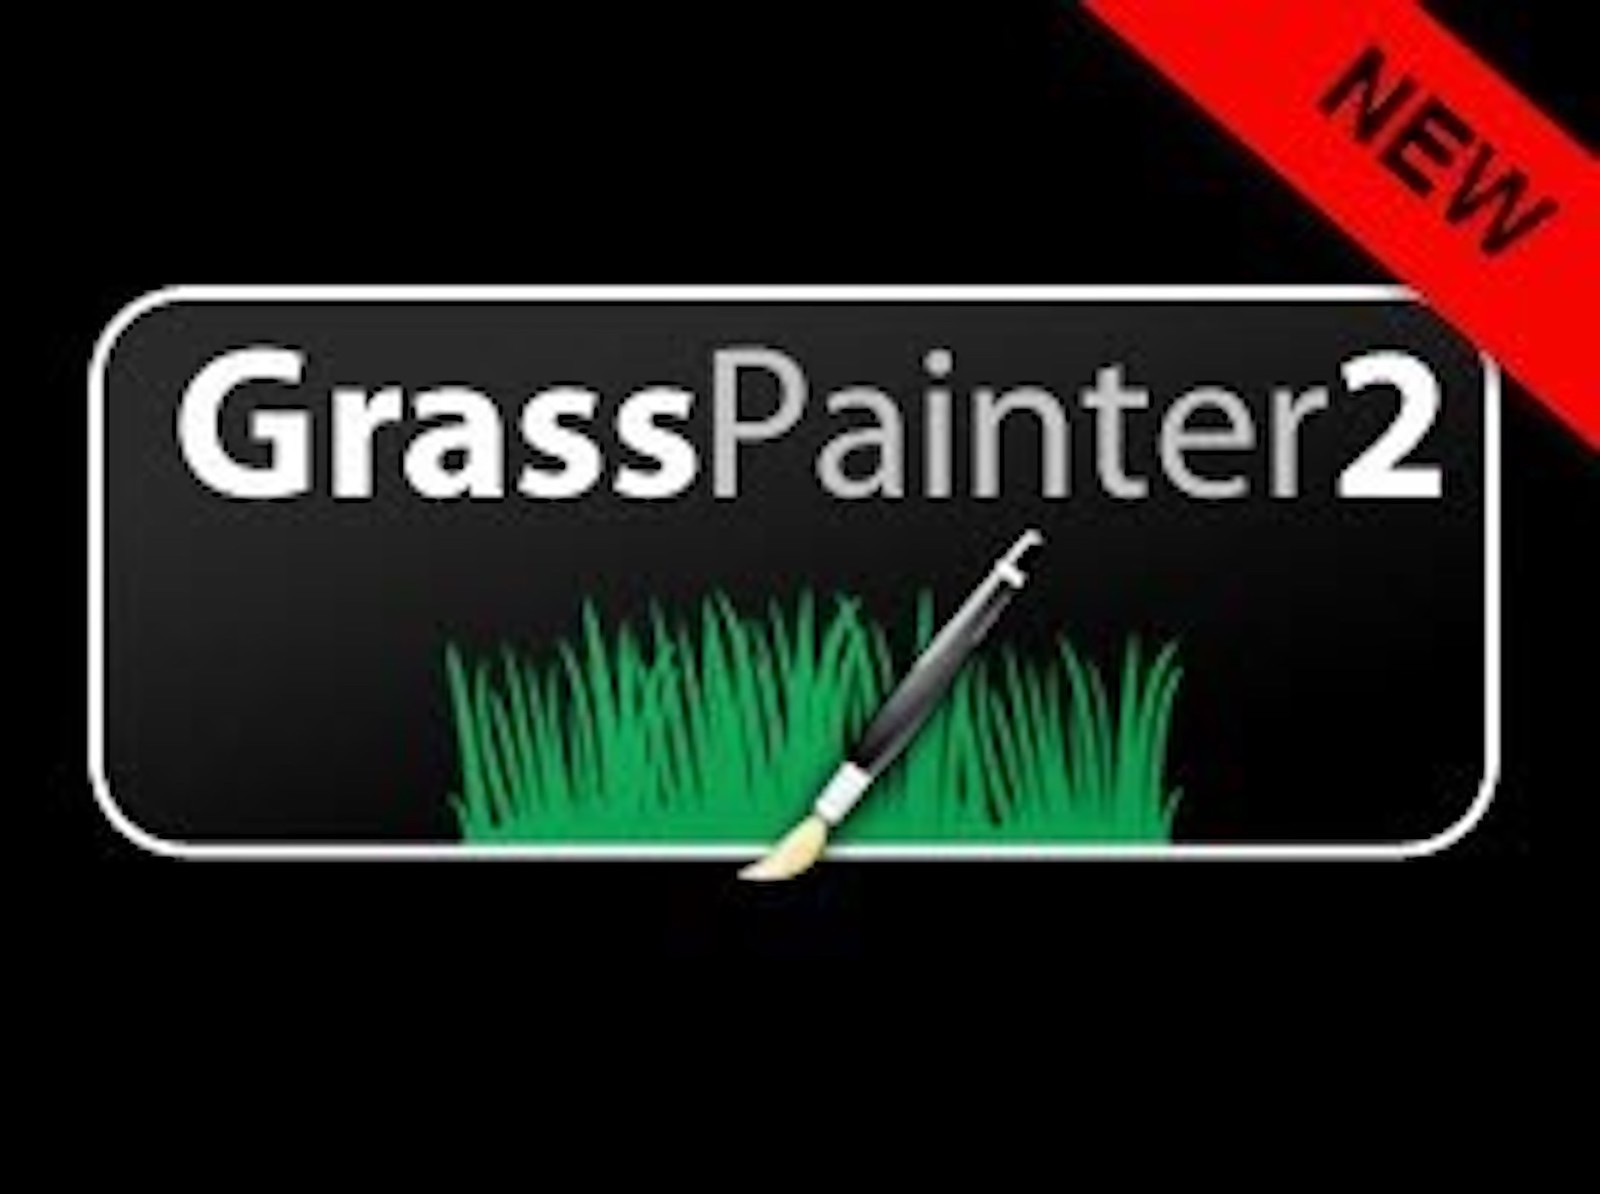 Grass Painter 2.1 update